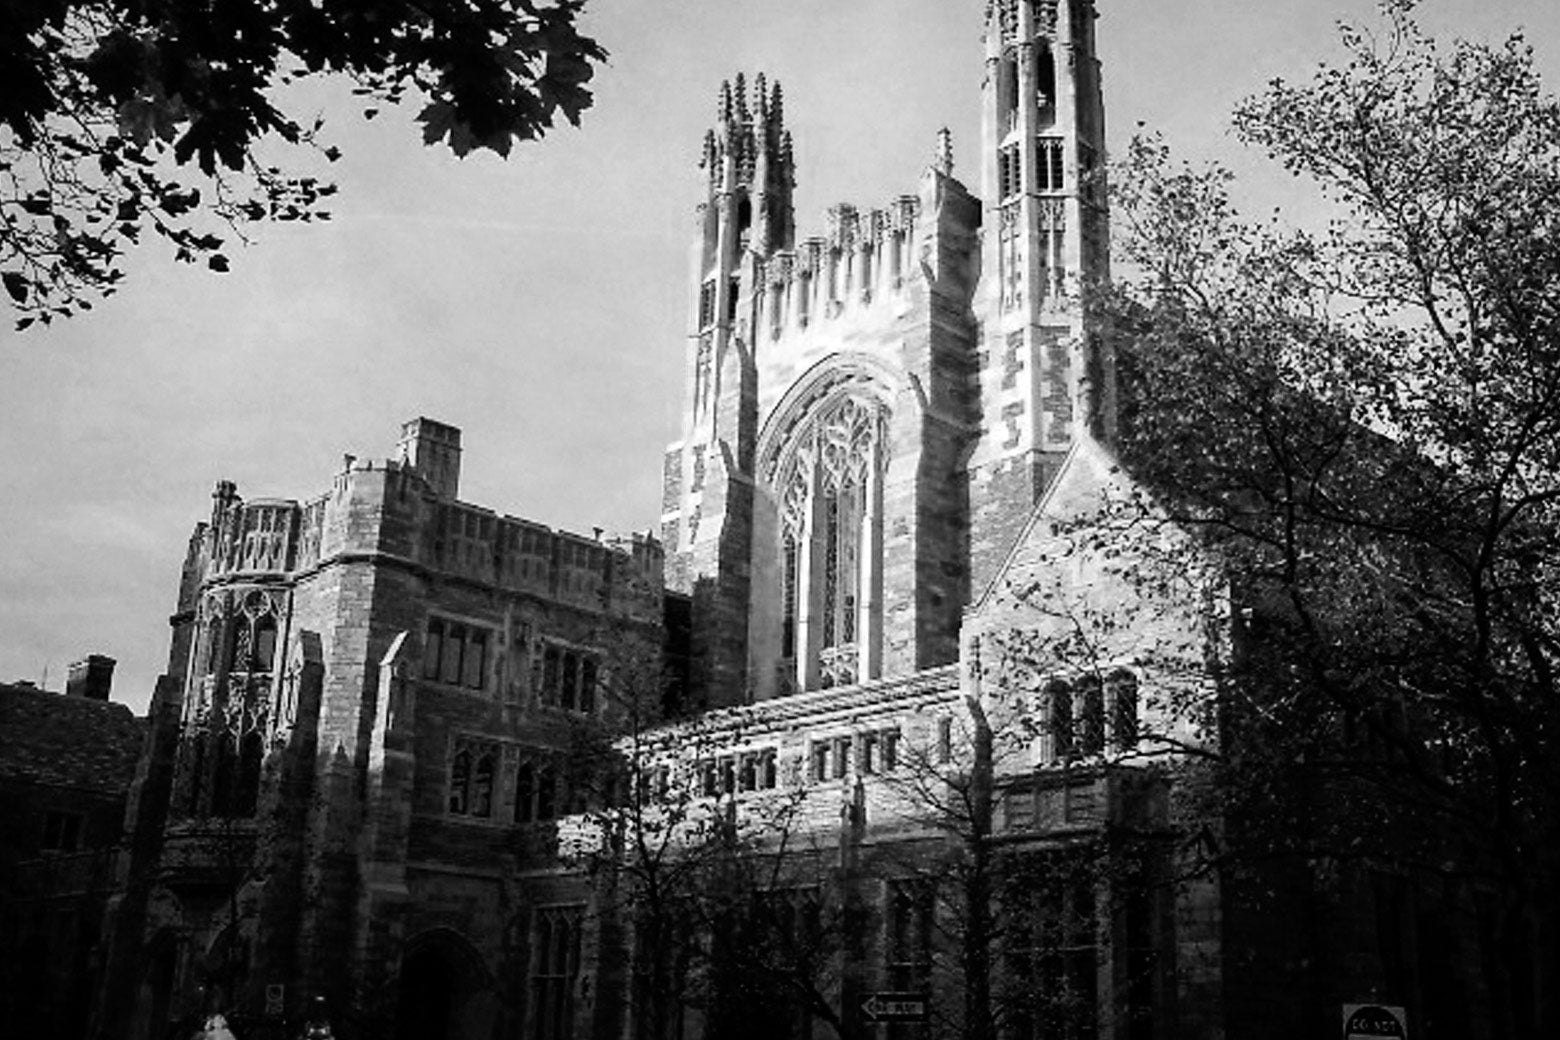 Yale Law School’s Sterling Law Building.